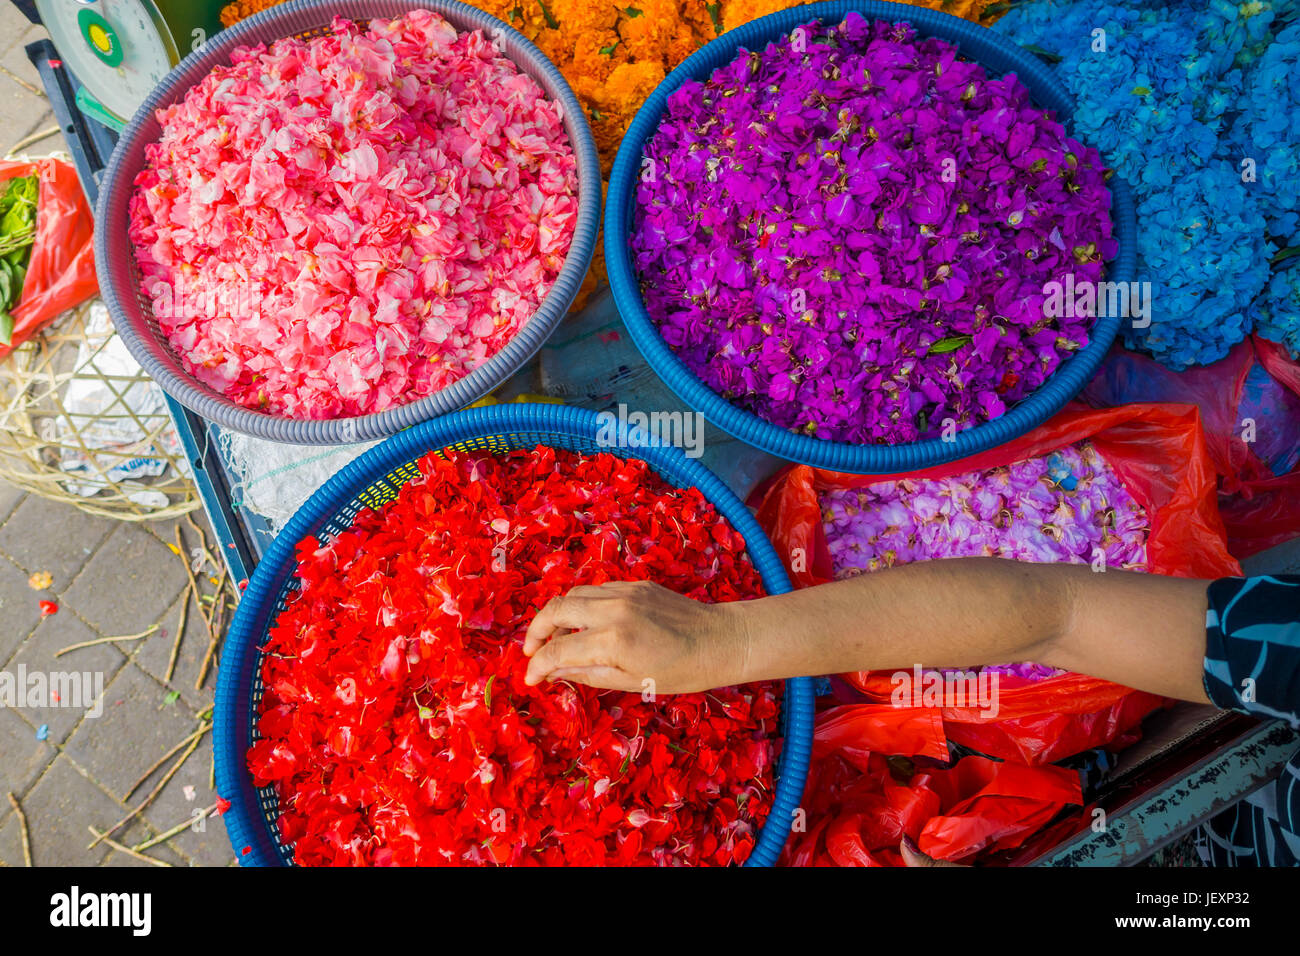 BALI, Indonesien - 8. März 2017: Outdoor Bali Blumenmarkt. Blumen sind täglich von balinesischen Hindus als symbolische Opfergaben an Schläfen, innerhalb co verwendet. Stockfoto